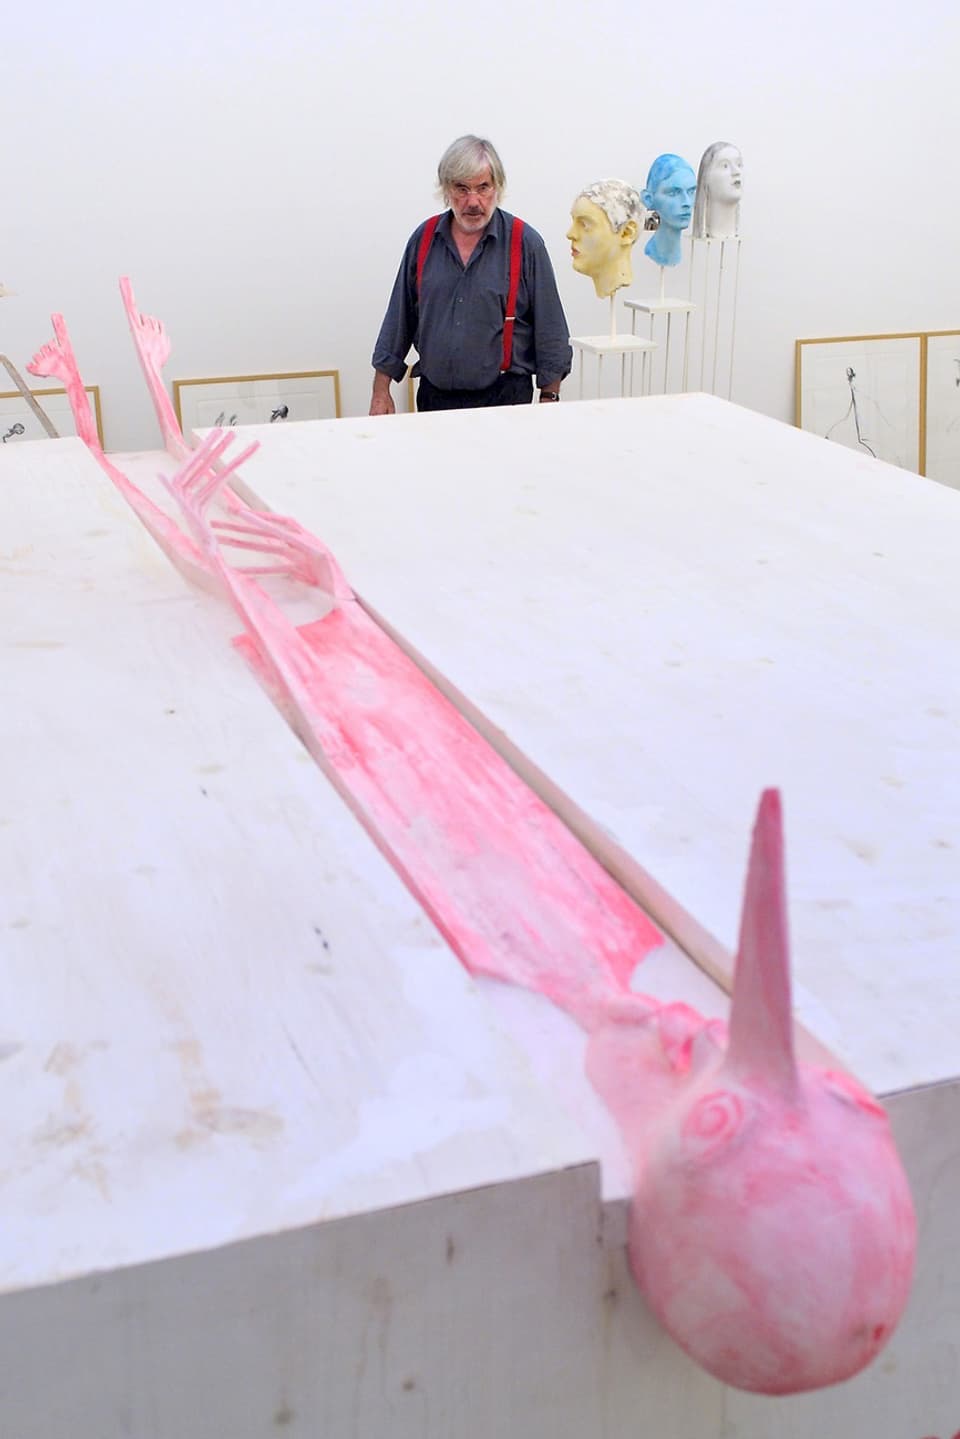 Der Künstler neben einer liegenden, rosaroten Skulptur, die einen dünnen Menschen darstellt.